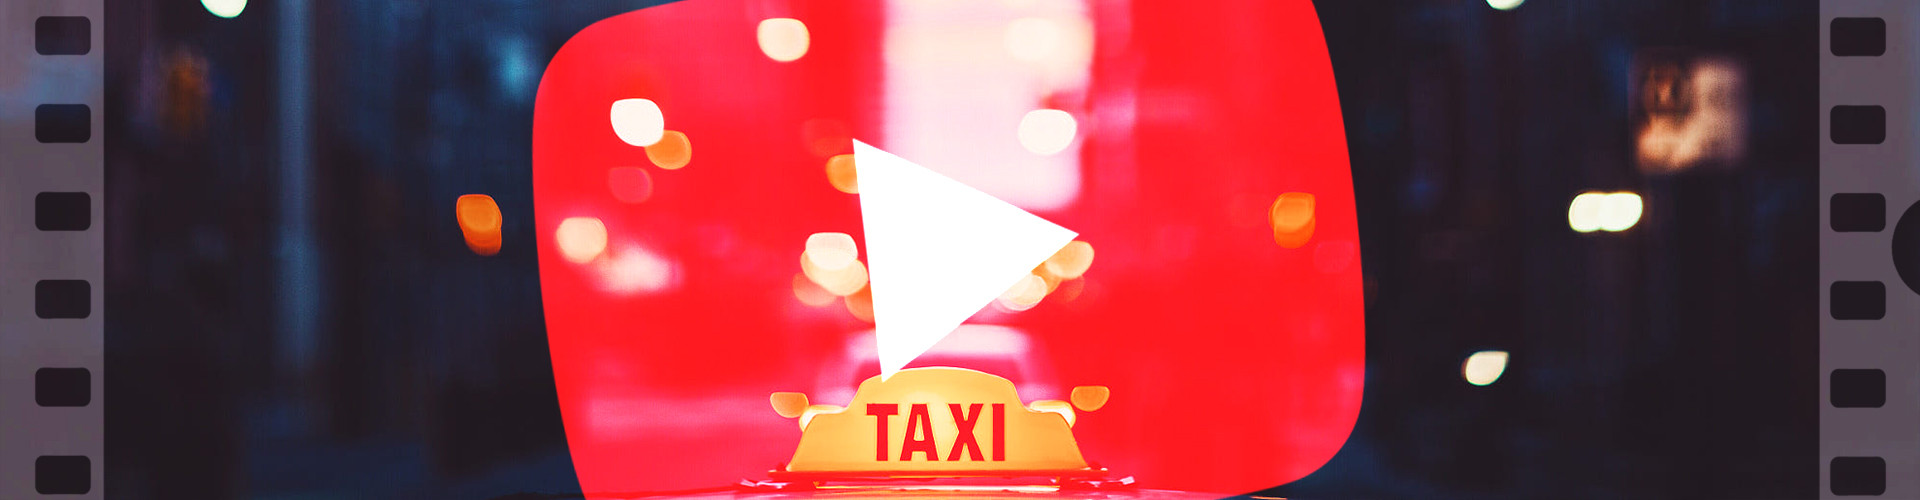 Интересные каналы про таксистов и для таксистов на YouTube